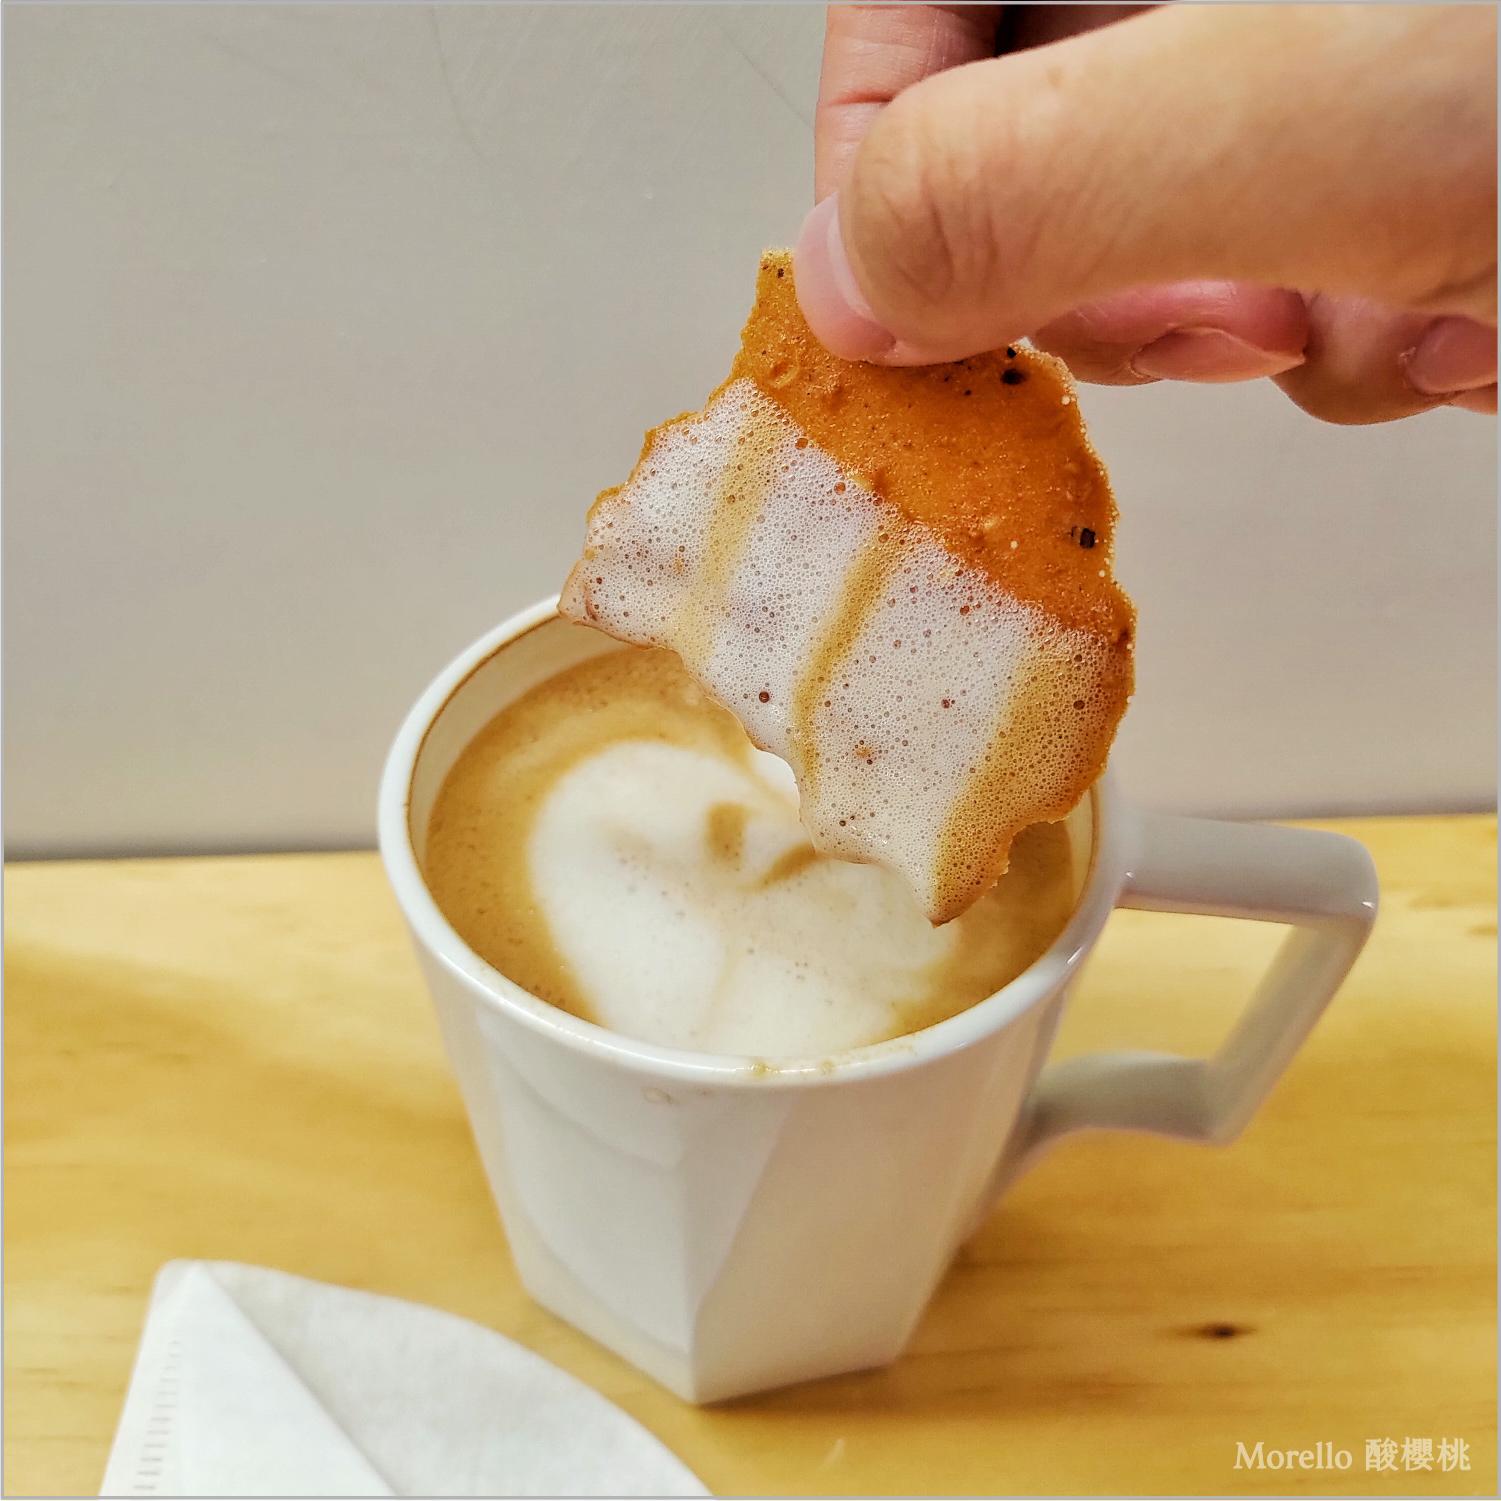 大豆燕麥 植物奶 咖啡拿鐵 所附上的燕麥餅乾可以沾 植物奶 咖啡拿鐵 吃。